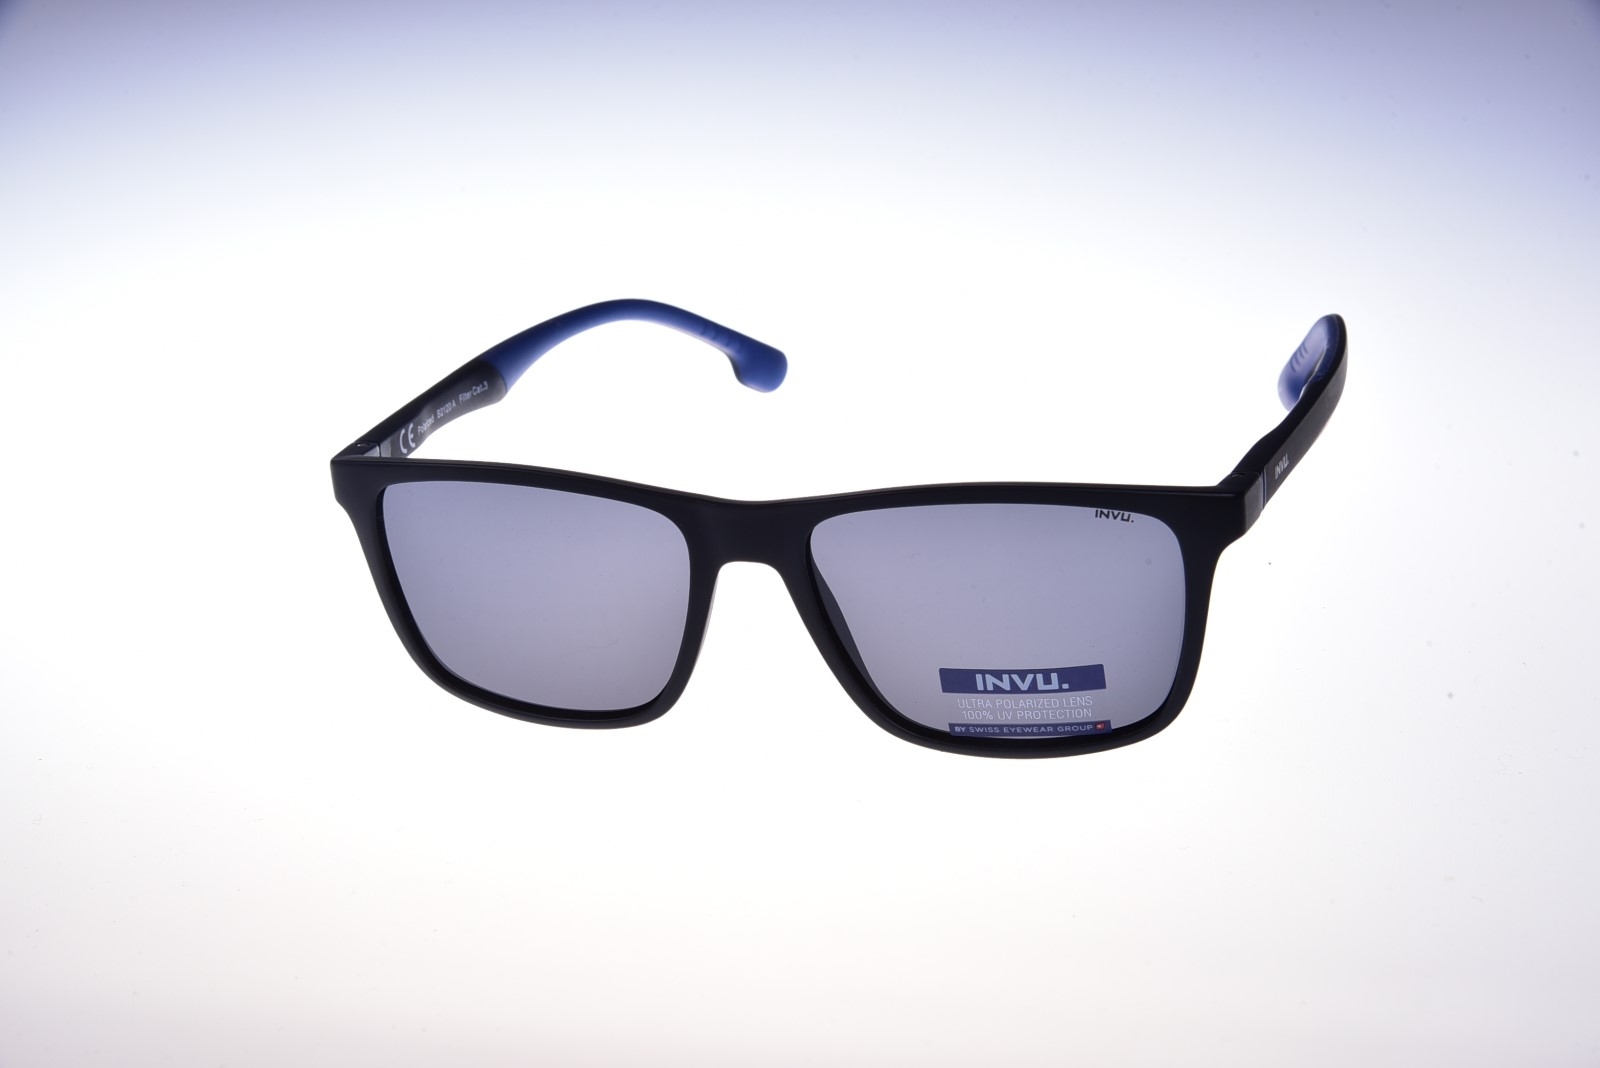 INVU. Basic B2120A - Pánske slnečné okuliare